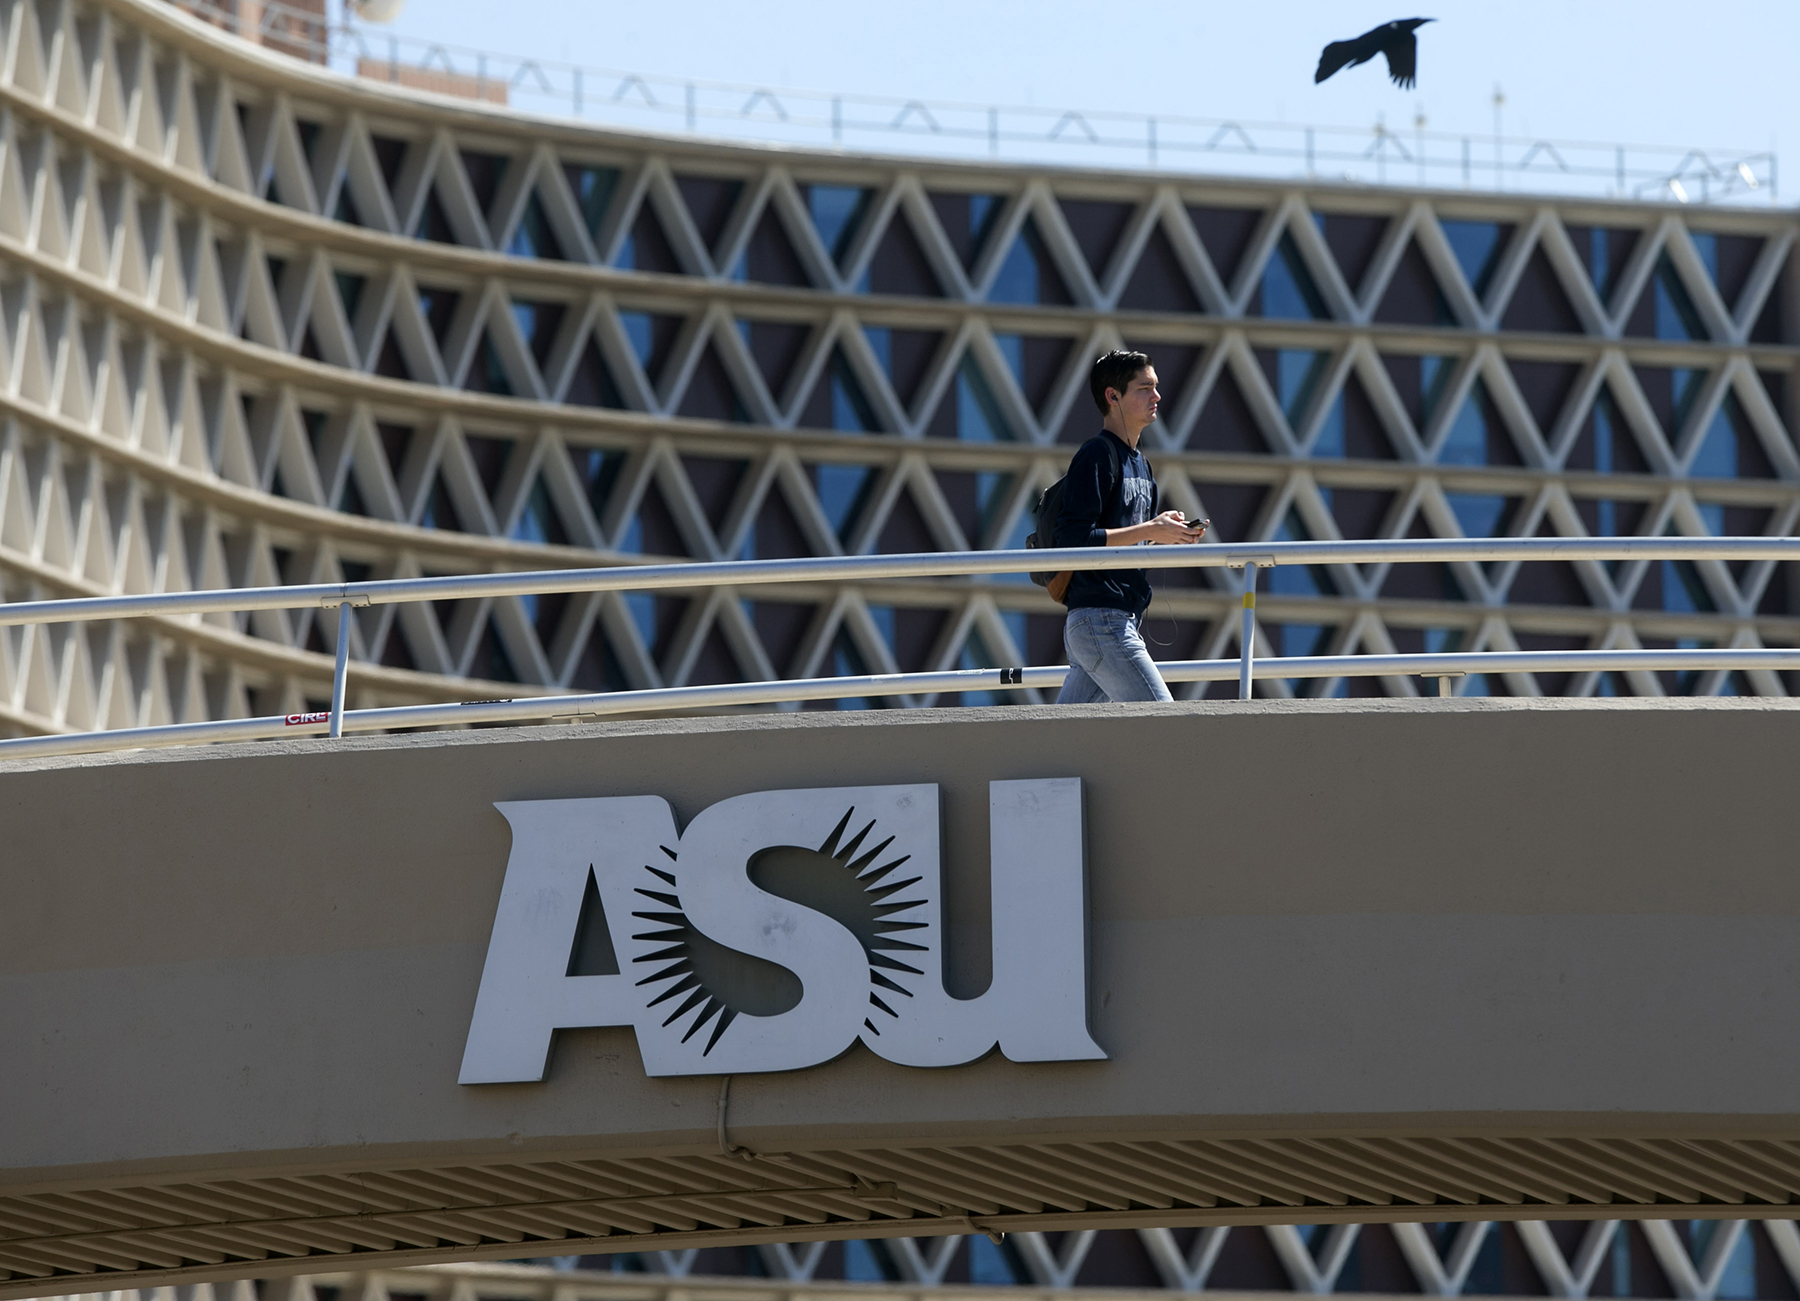 ASU closes Confucius Institute due to Defense Department objections